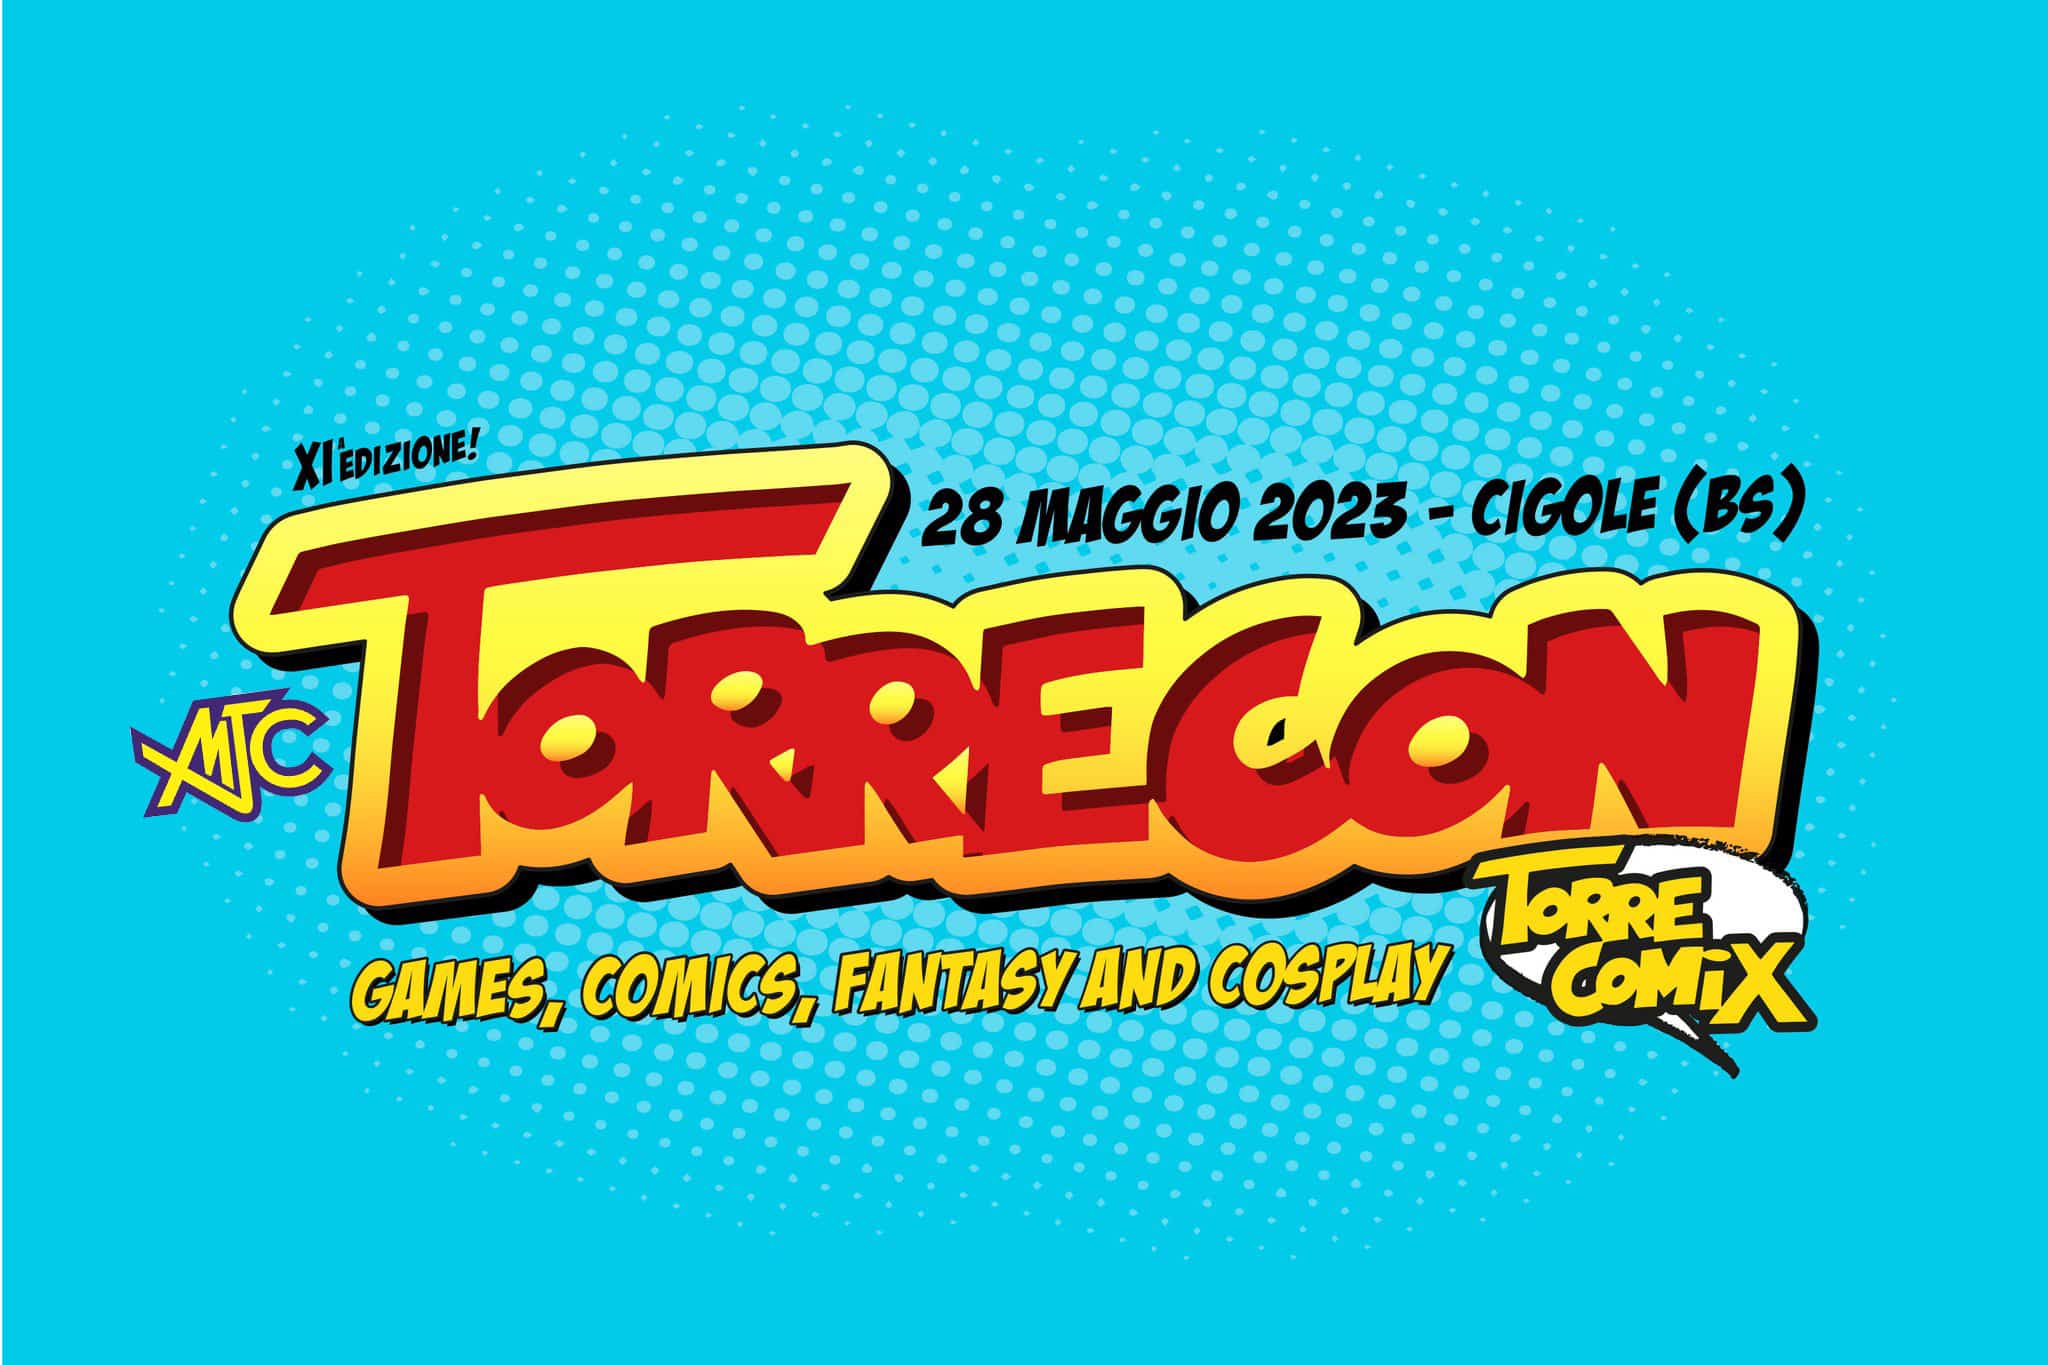 Forlì Comics and Games 03 04 dicembre 2022 (Forlì)